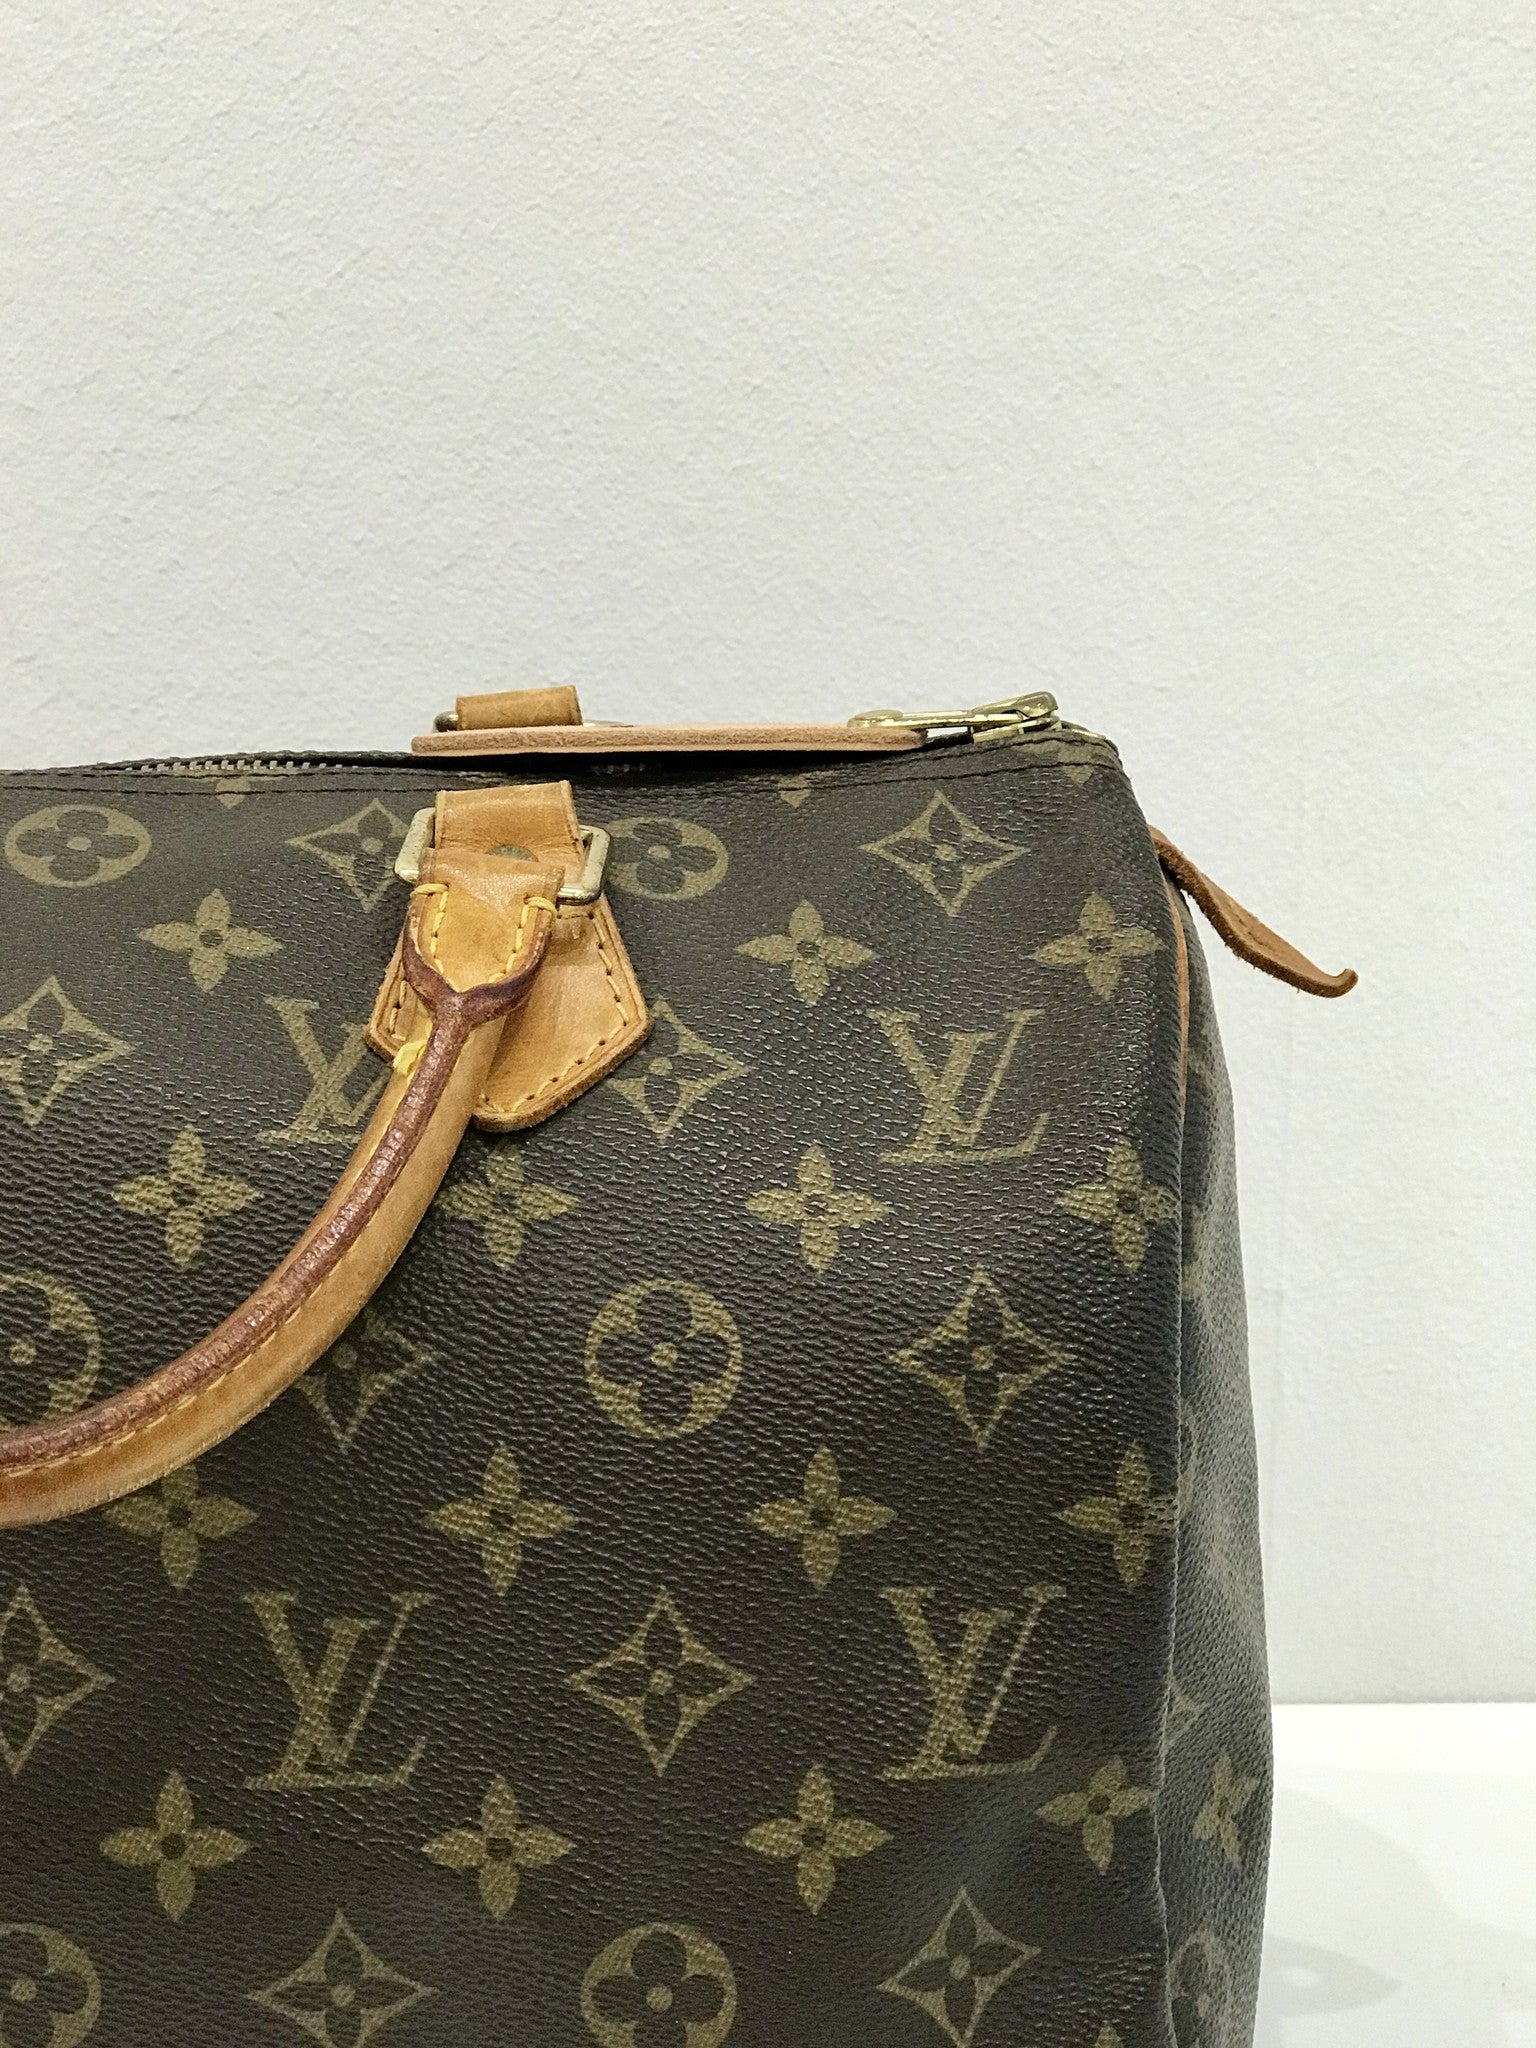 Louis Vuitton Beuteltaschen günstig kaufen, Second Hand